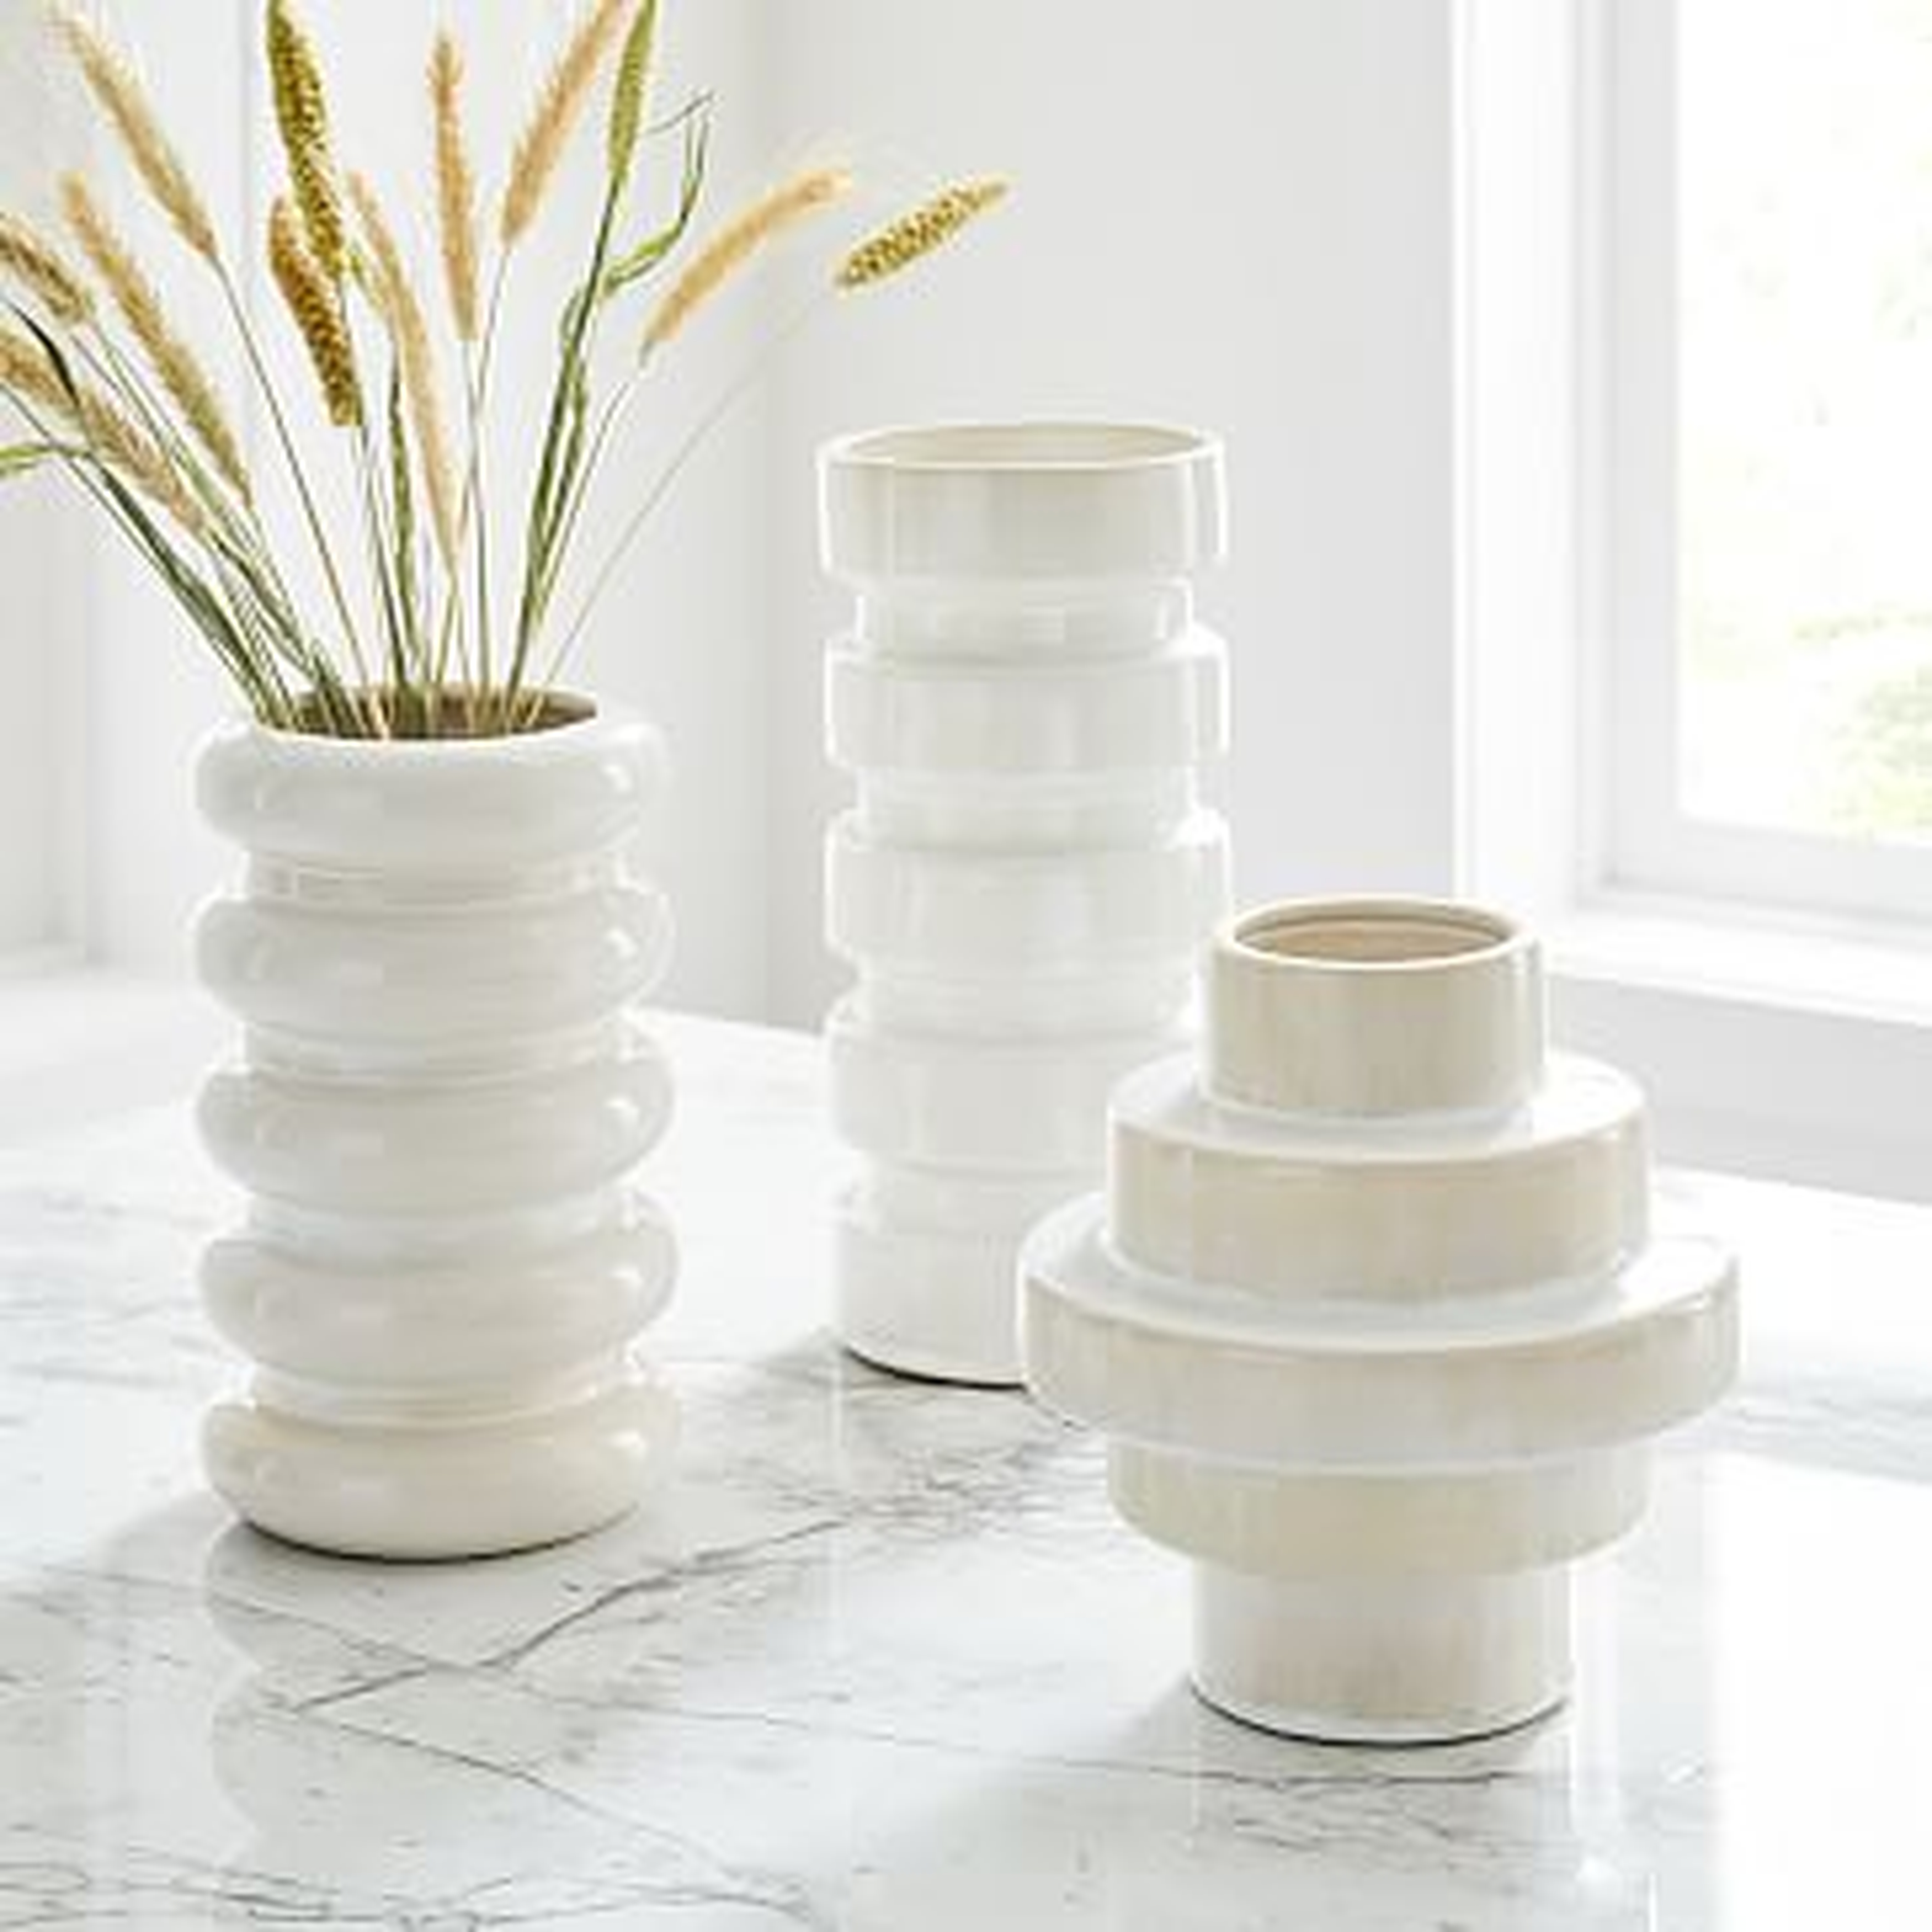 Stepped Form Ceramic Round Steps, Translucent White, Set of 3 - West Elm